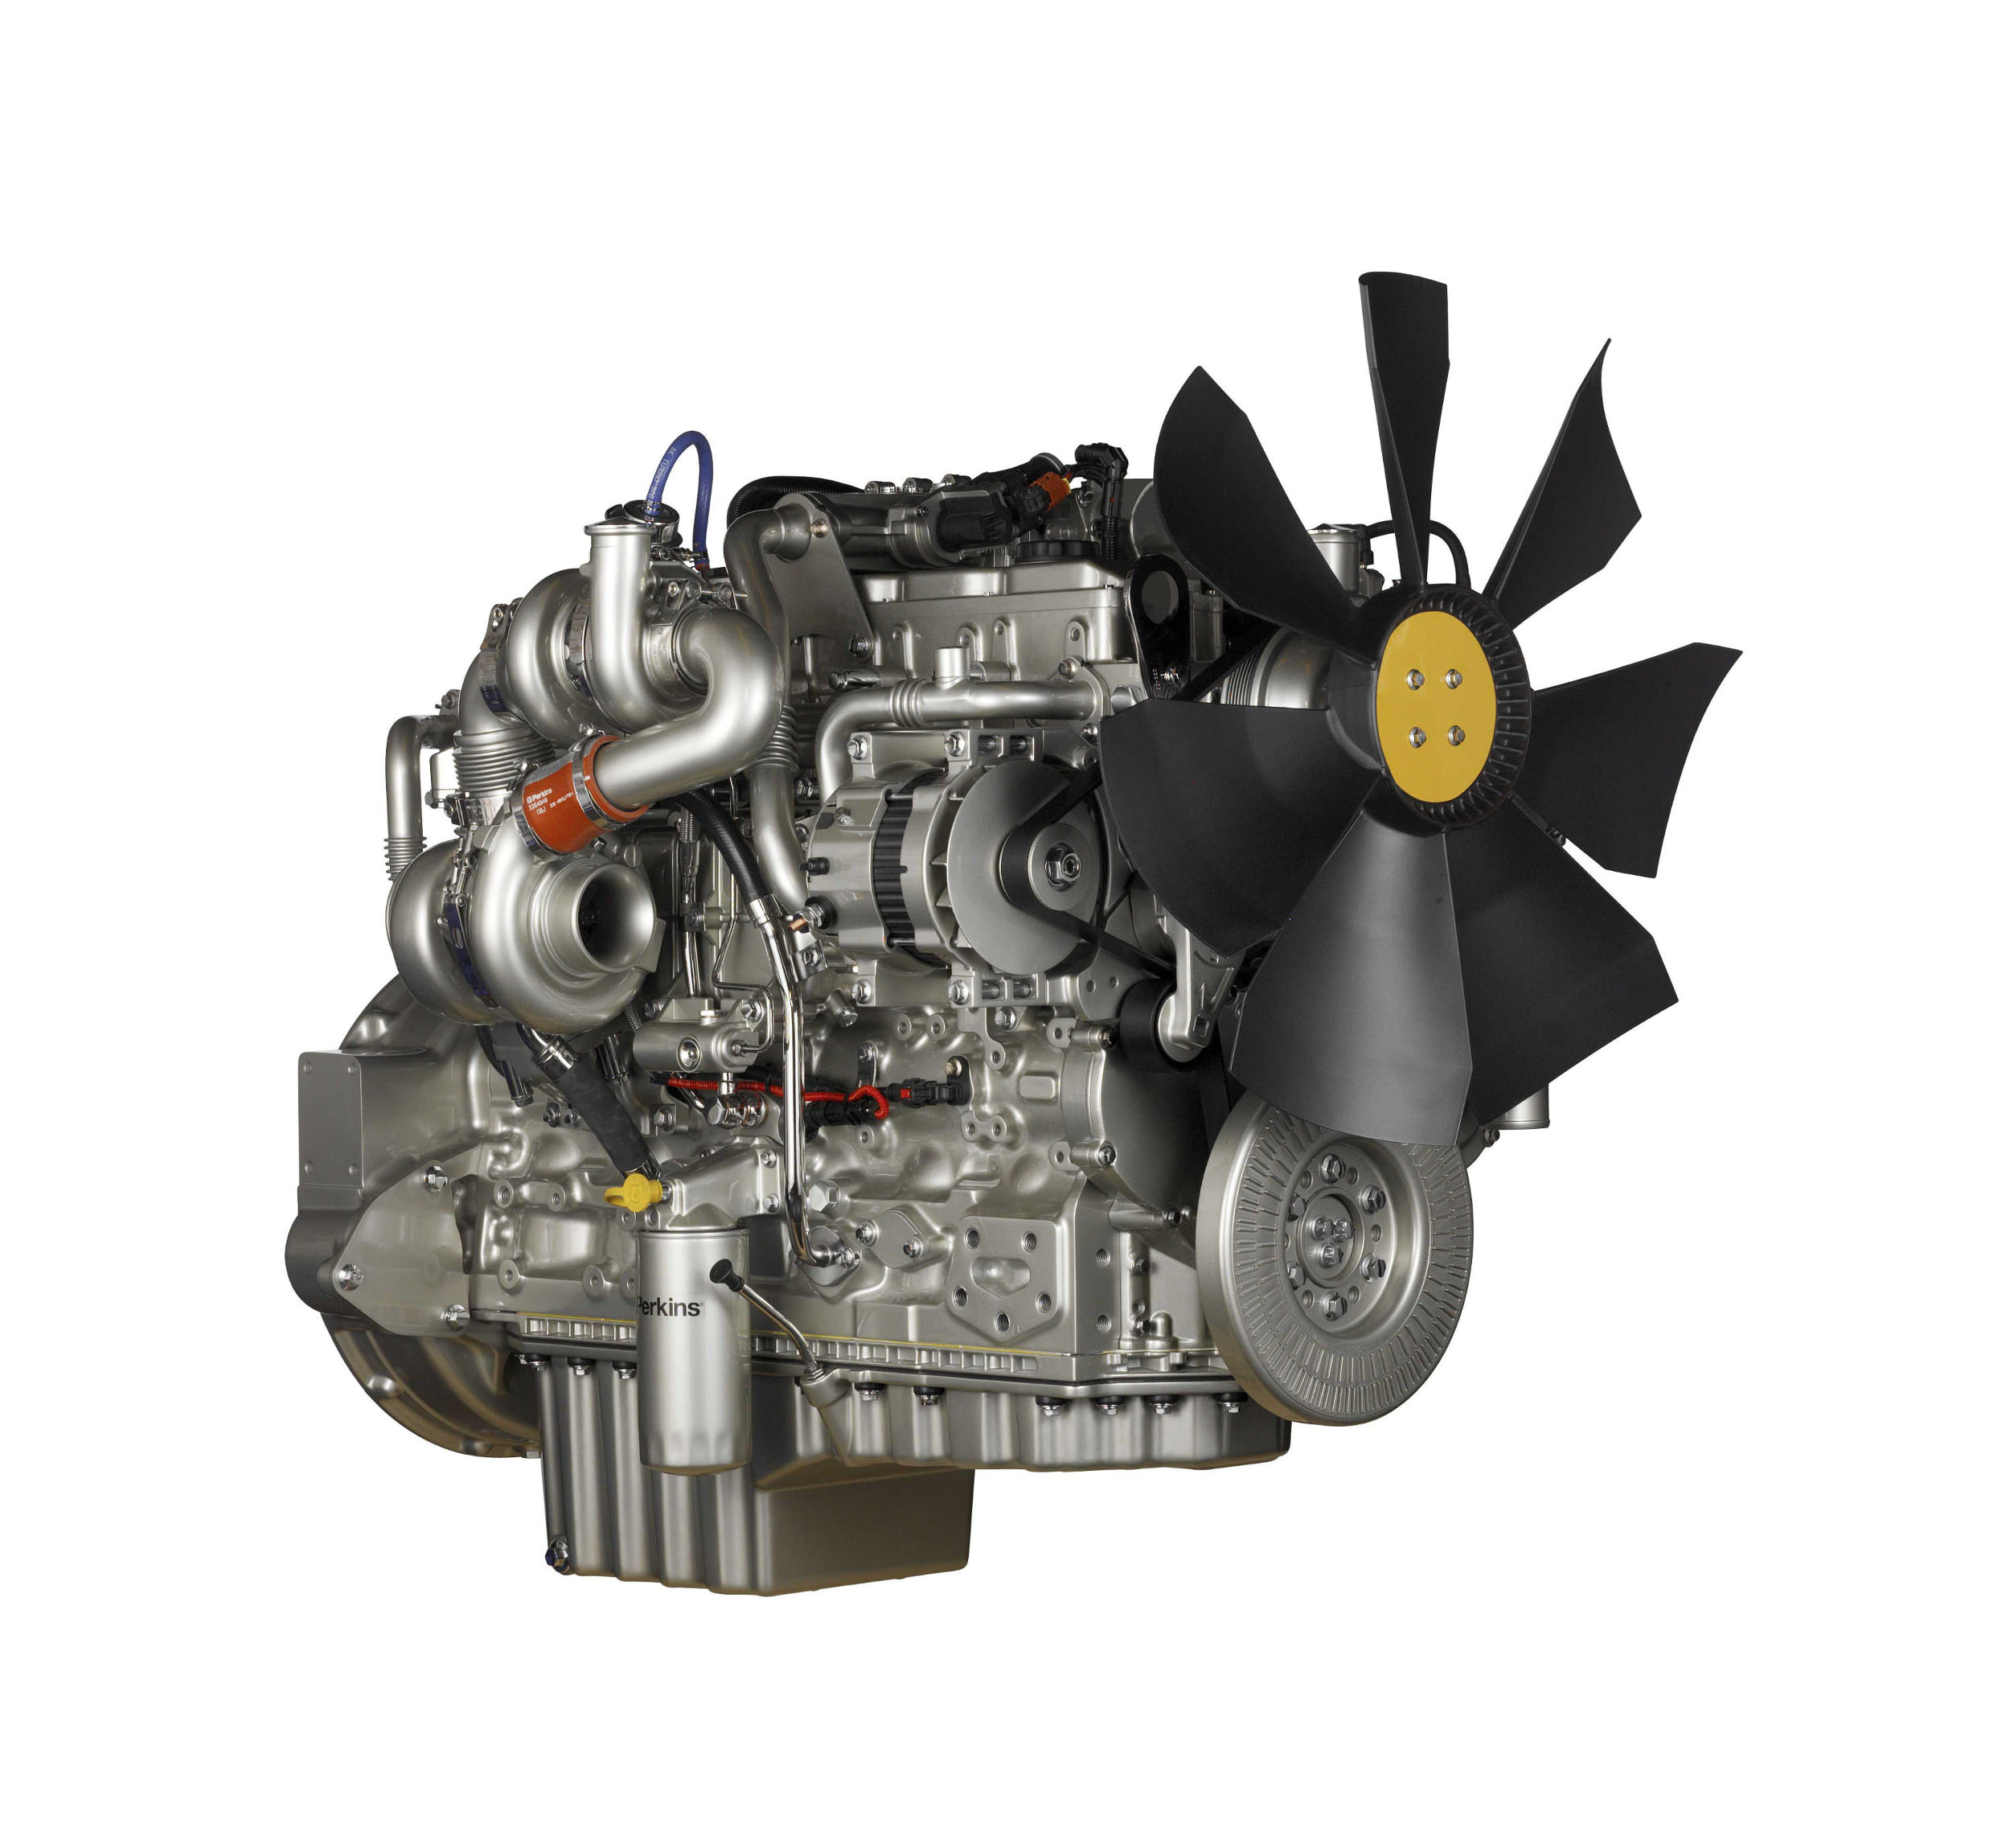 Perkins Diesel Engines